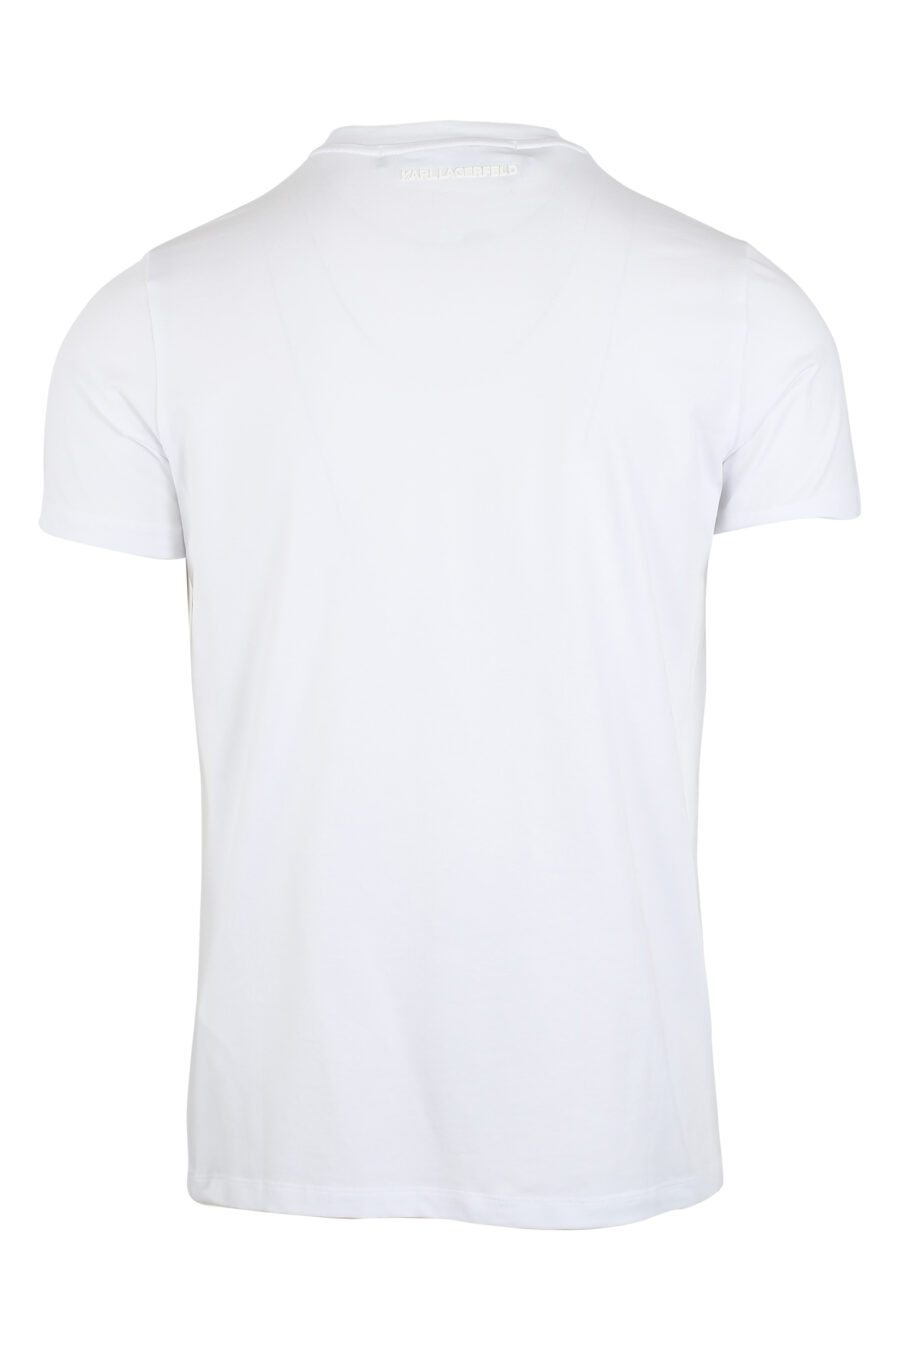 T-shirt branca com logótipo de efeito holográfico - IMG 9487